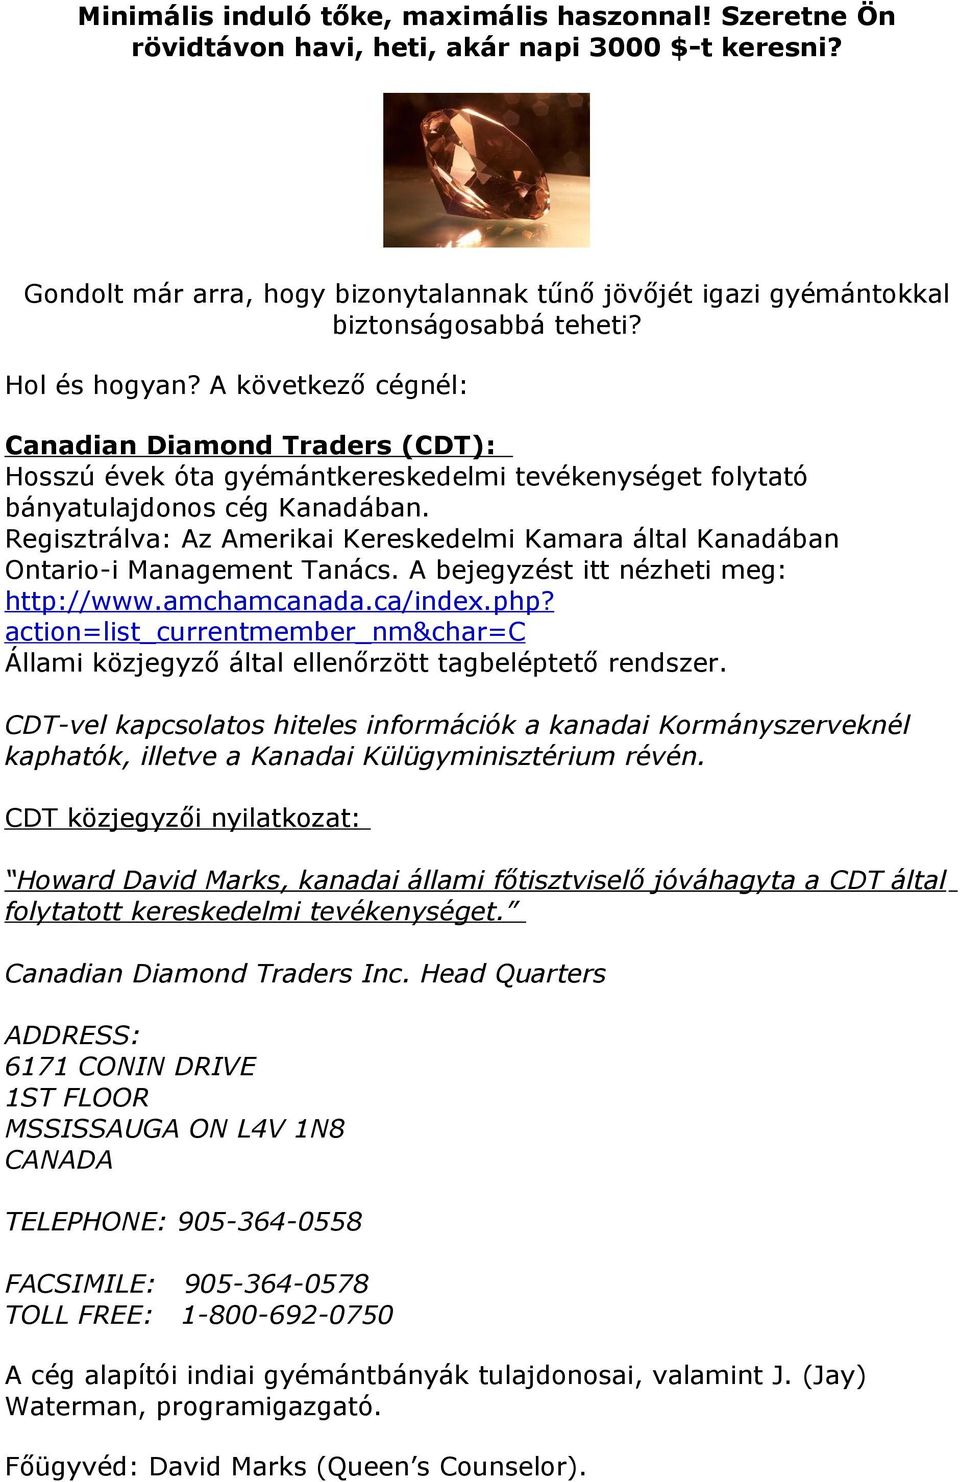 Regisztrálva: Az Amerikai Kereskedelmi Kamara által Kanadában Ontario-i Management Tanács. A bejegyzést itt nézheti meg: http://www.amchamcanada.ca/index.php?